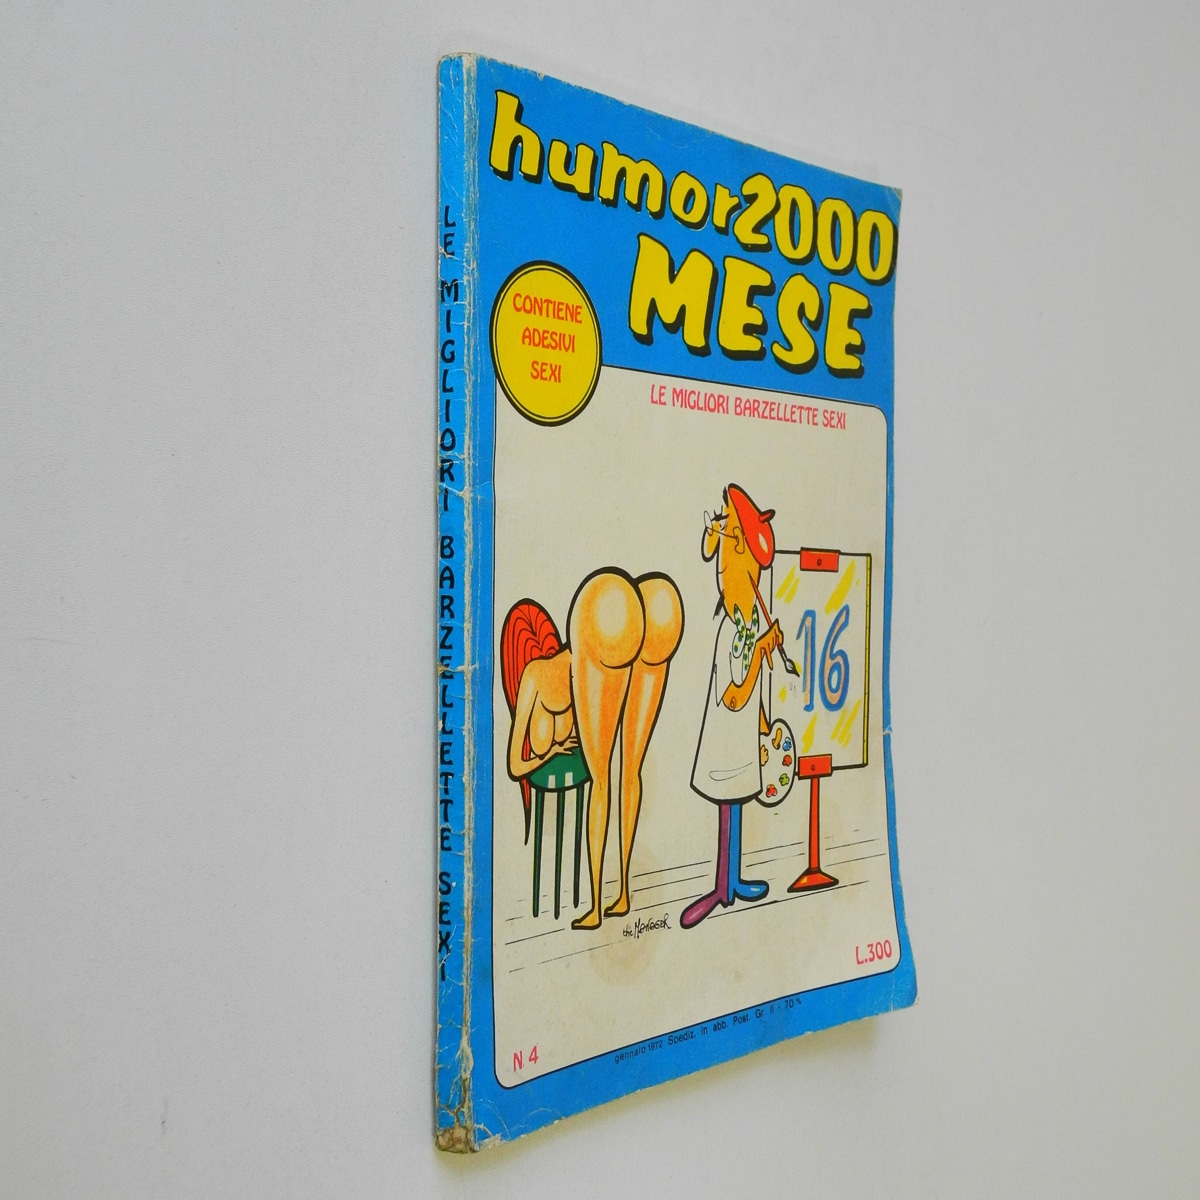 Humor 2000 Mese n. 4